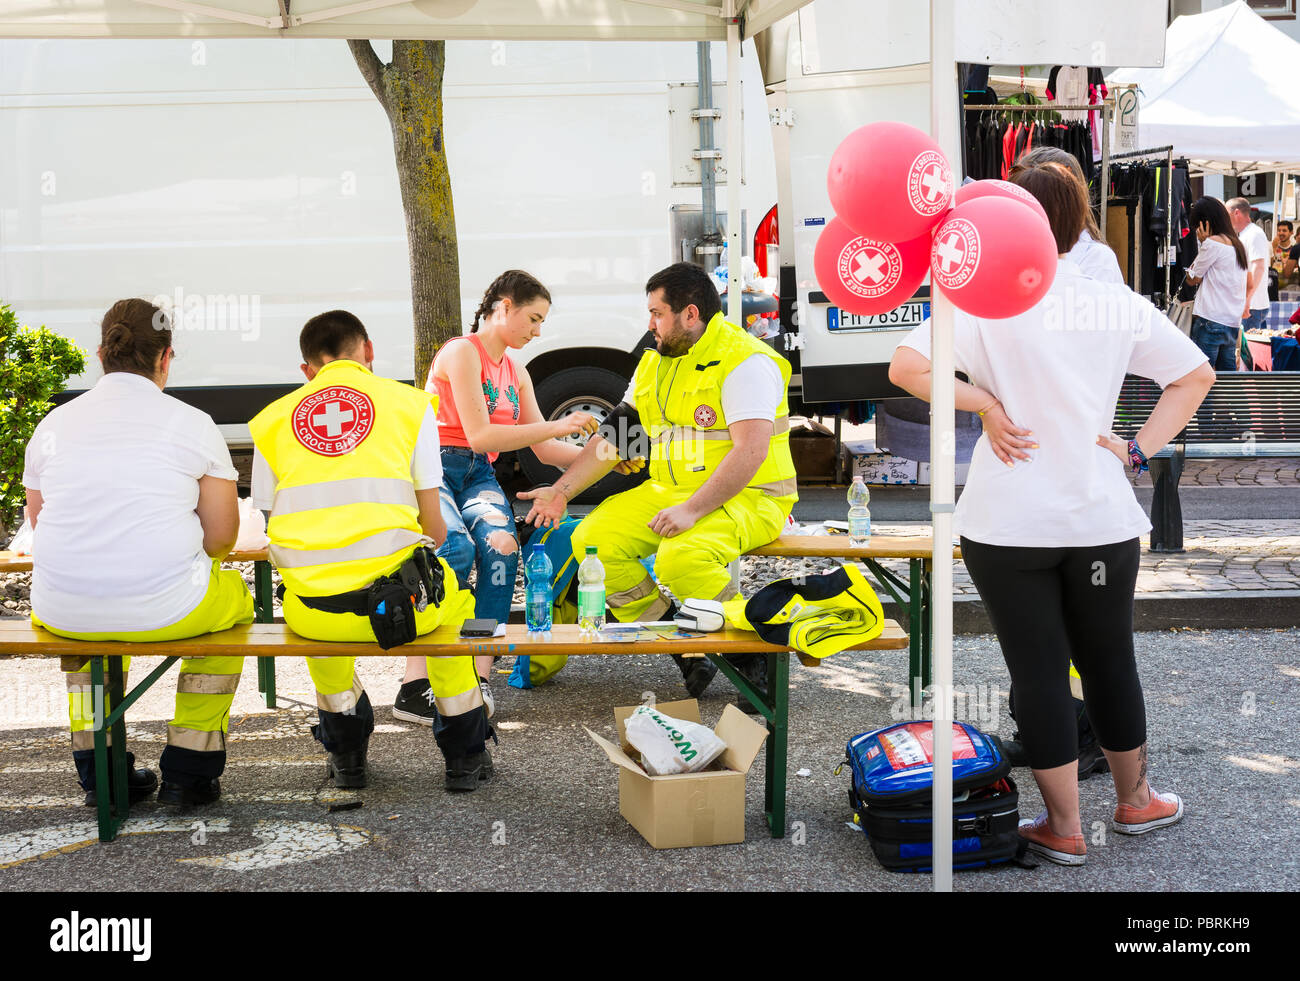 Stands promocionales sobre las actividades de la Cruz Roja, venta de gadgets y uniformes de la Cruz Roja Italiana - Cruz Roja Trentino Alto Adige, en Bolzano, Italia Foto de stock